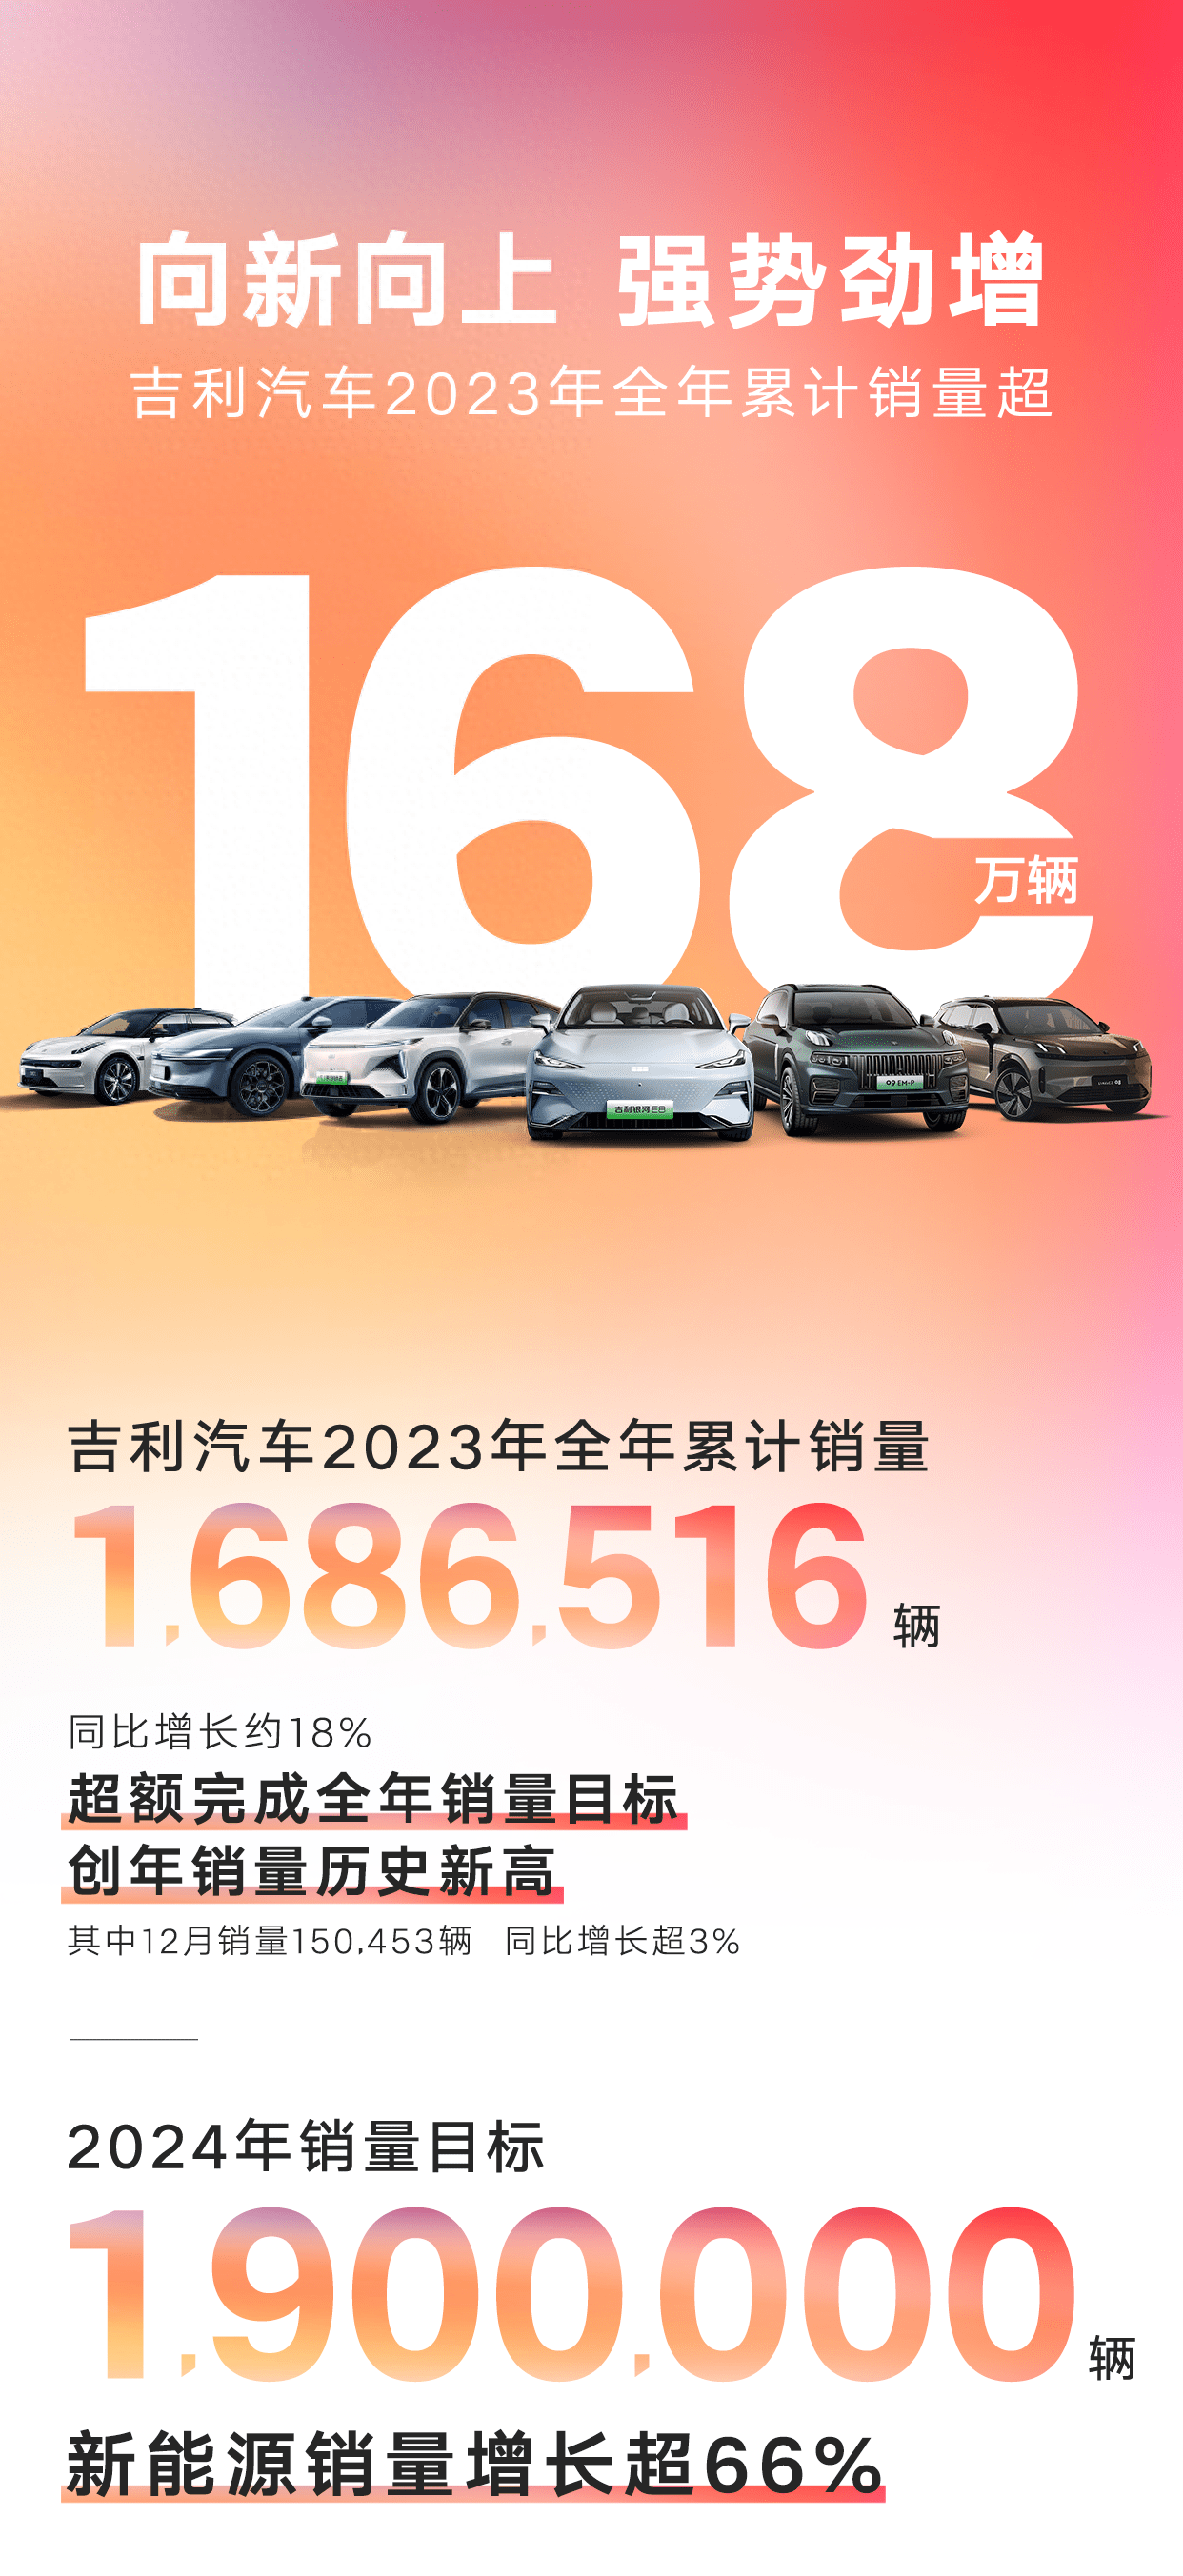 超额完成全年目标 吉利汽车2023年销量突破168万辆